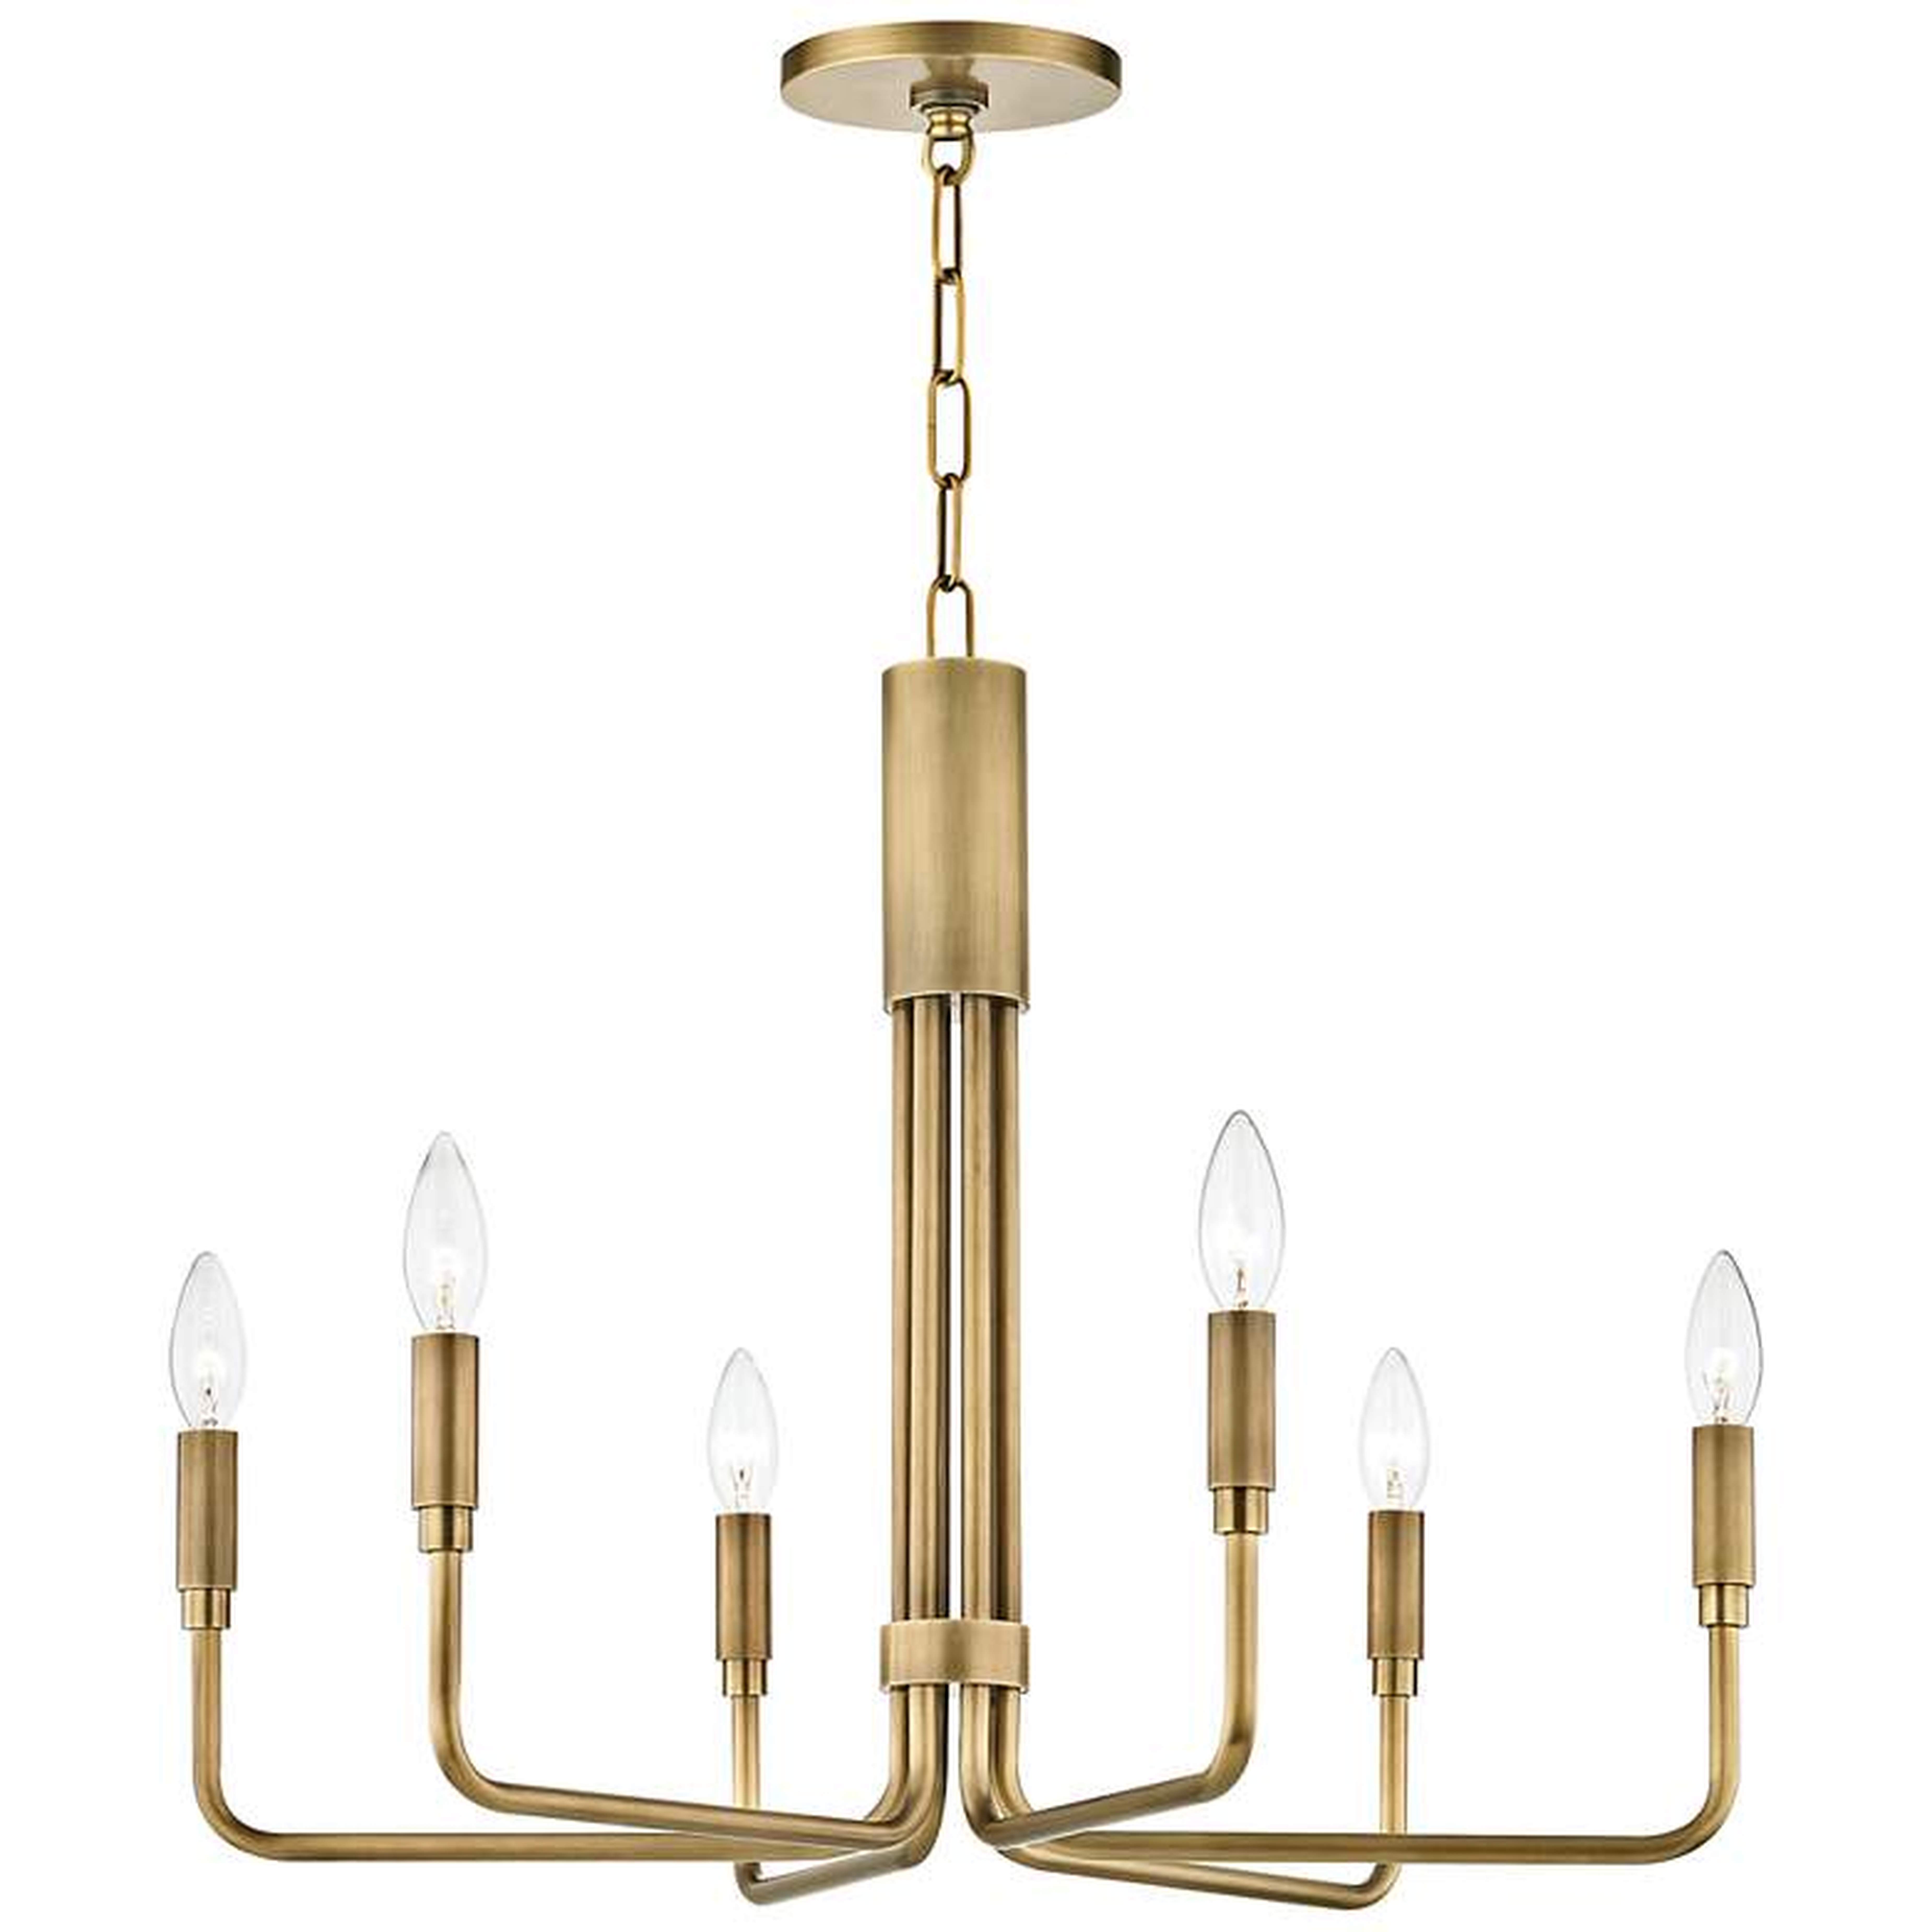 Mitzi Brigitte 25" Wide Aged Brass 6-Light Chandelier - Style # 47J52 - Lamps Plus